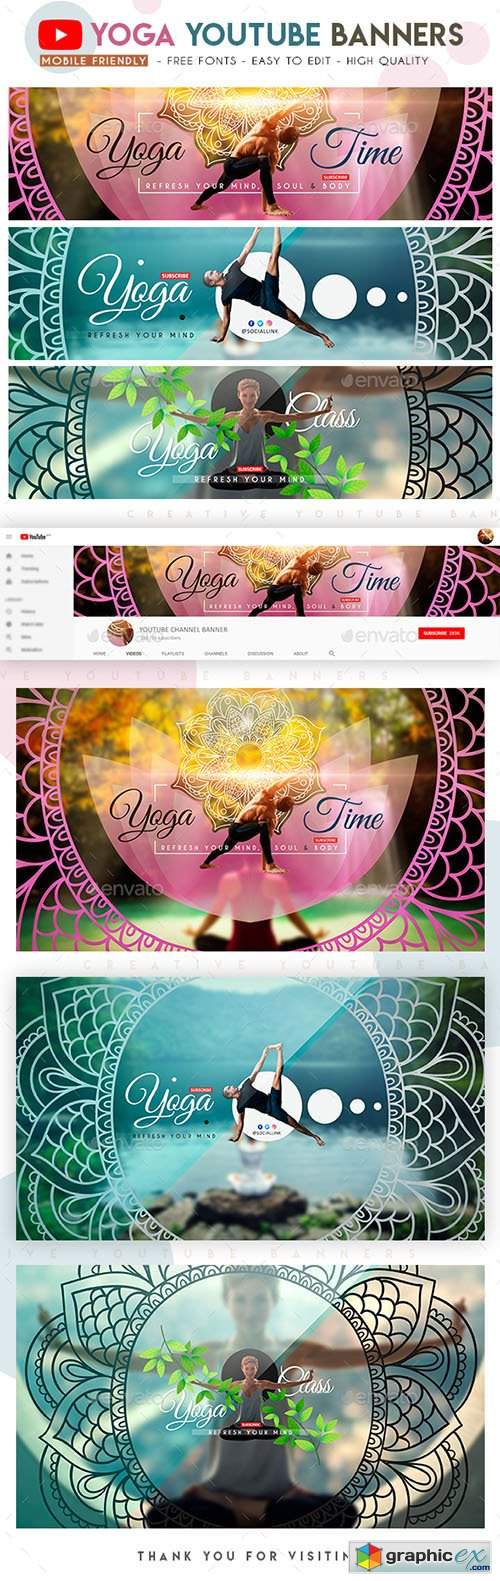 Yoga YouTube Banners